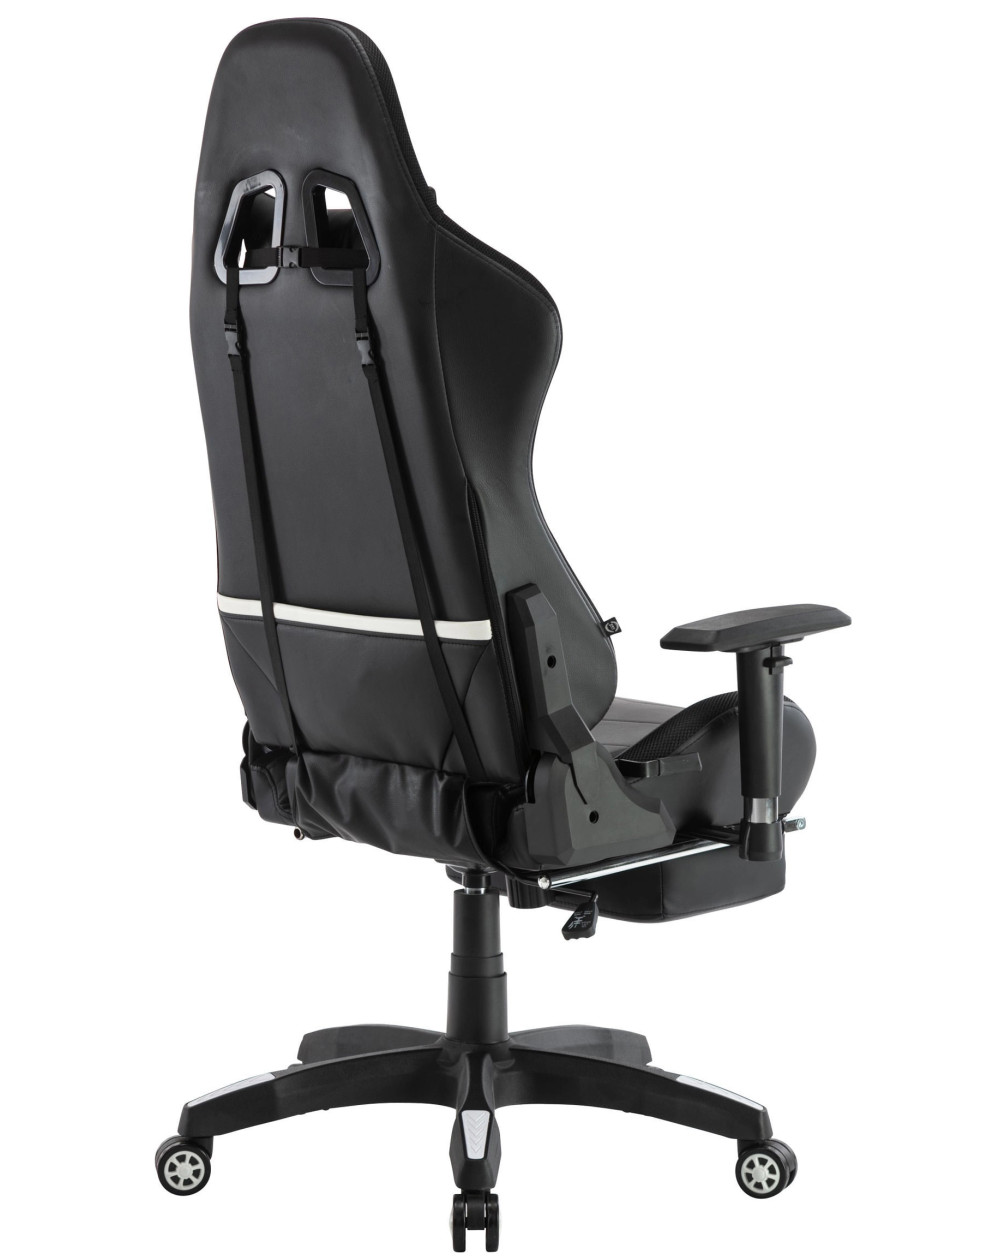 Cadeira WordPro S DUDECO - Material do assento: Pele sintética
Estofamento do assento: Espuma
Material da estrutura: Aço reforça